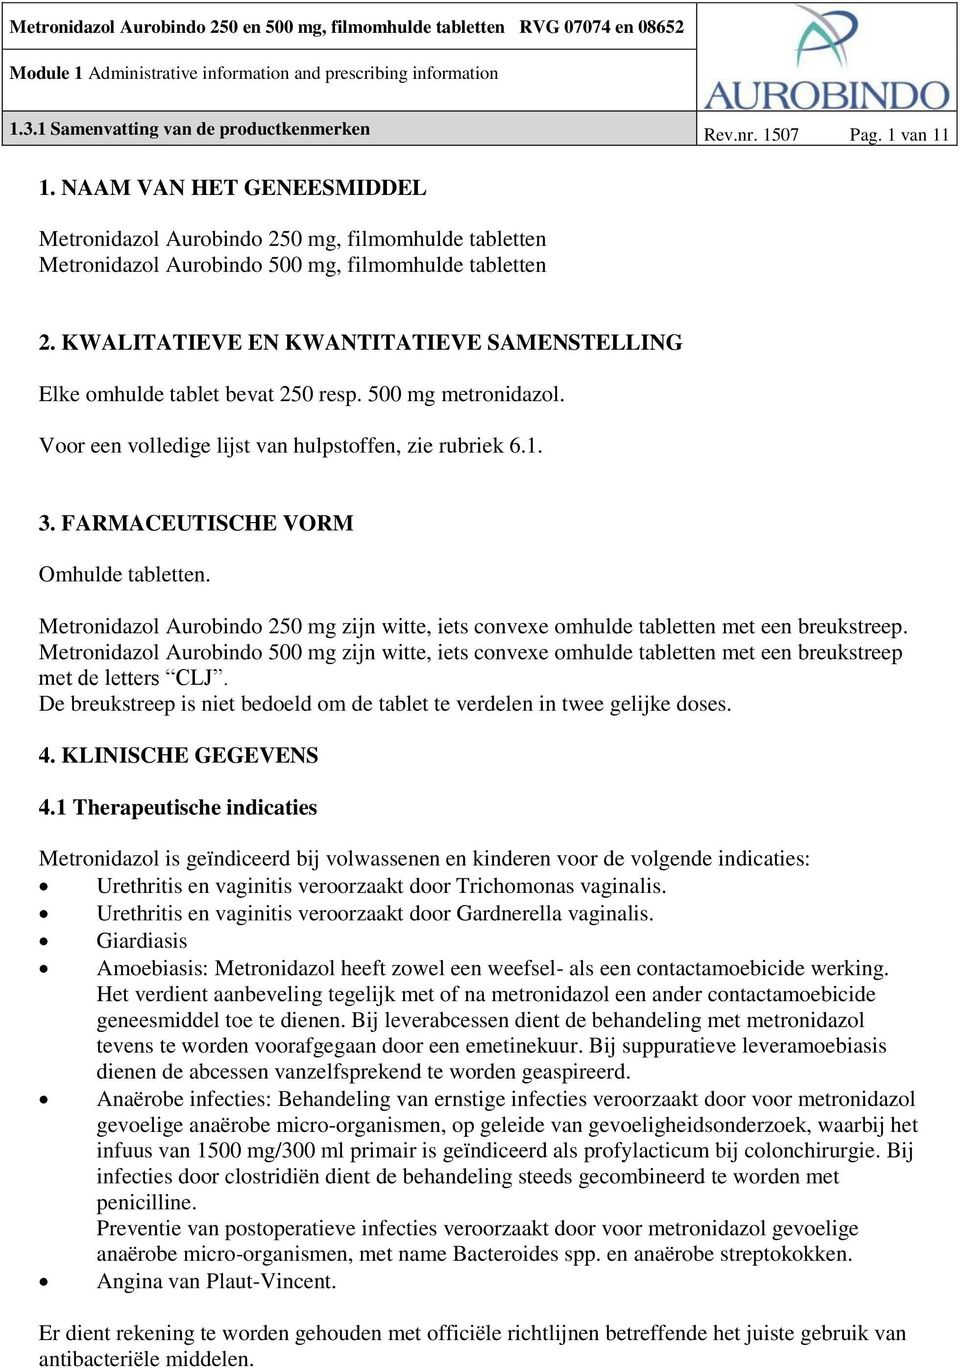 1. NAAM VAN HET GENEESMIDDEL. Metronidazol Aurobindo 250 mg, filmomhulde tabletten  Metronidazol Aurobindo 500 mg, filmomhulde tabletten - PDF Free Download